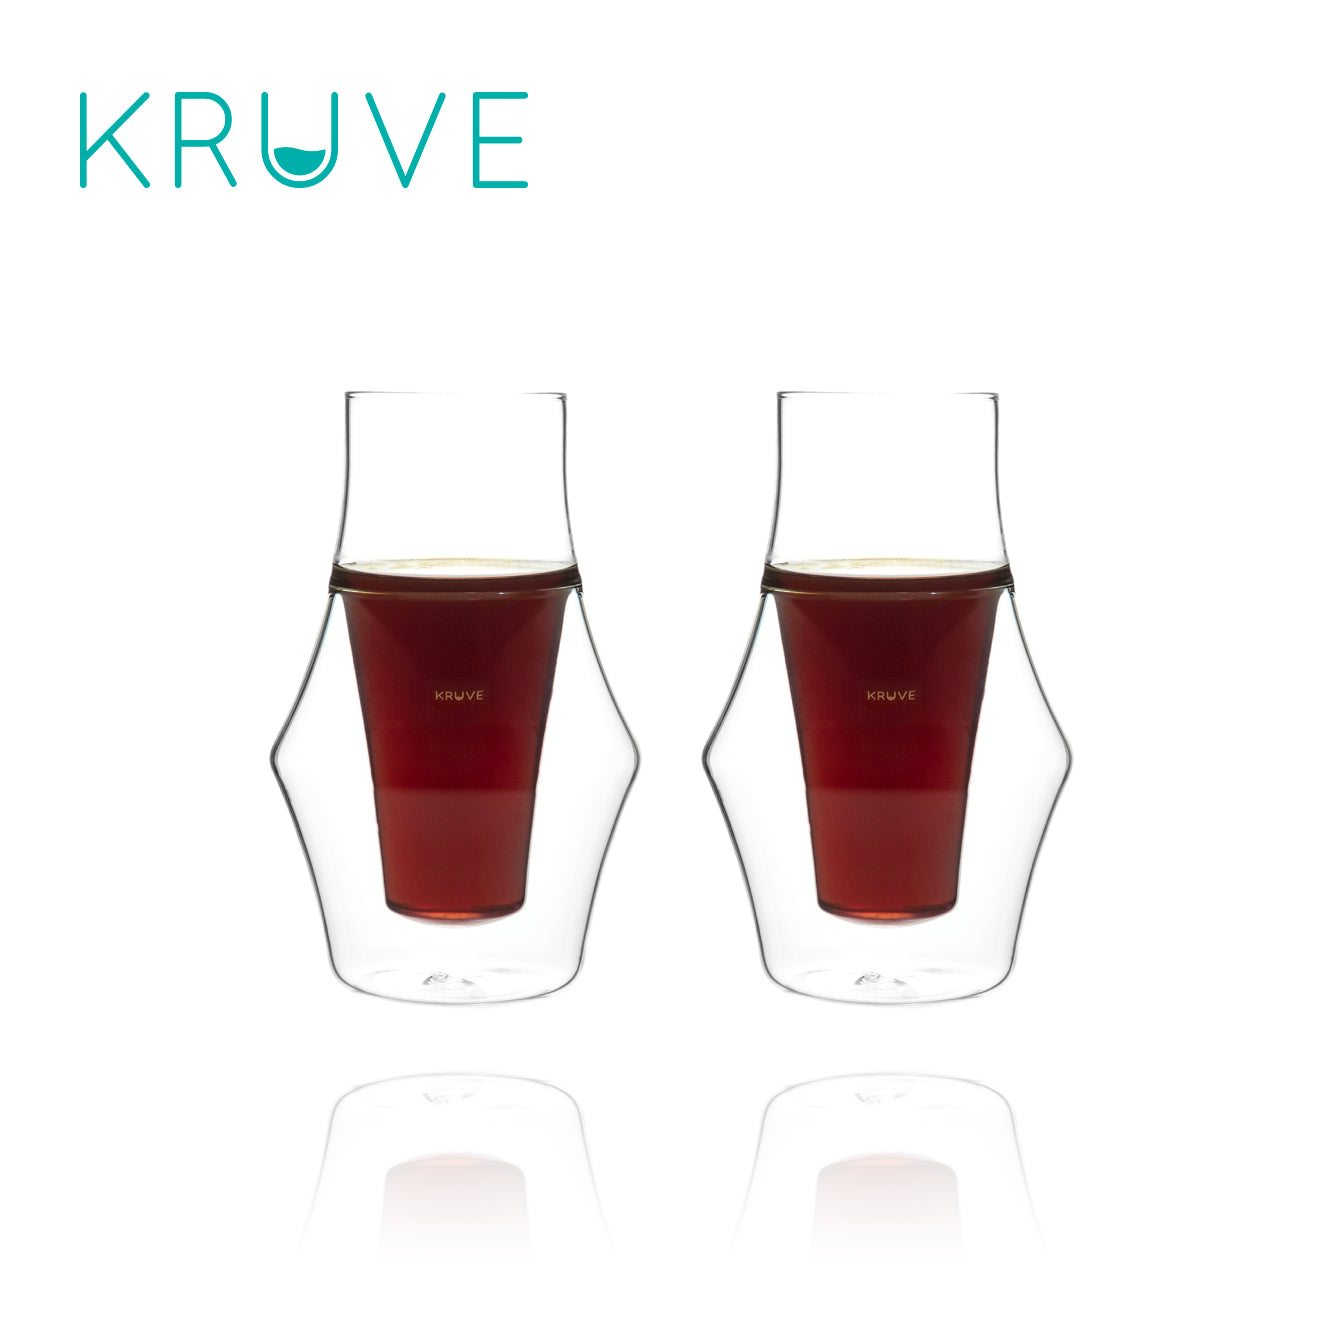 Kruve EQ Glasses Tasting Set inspire